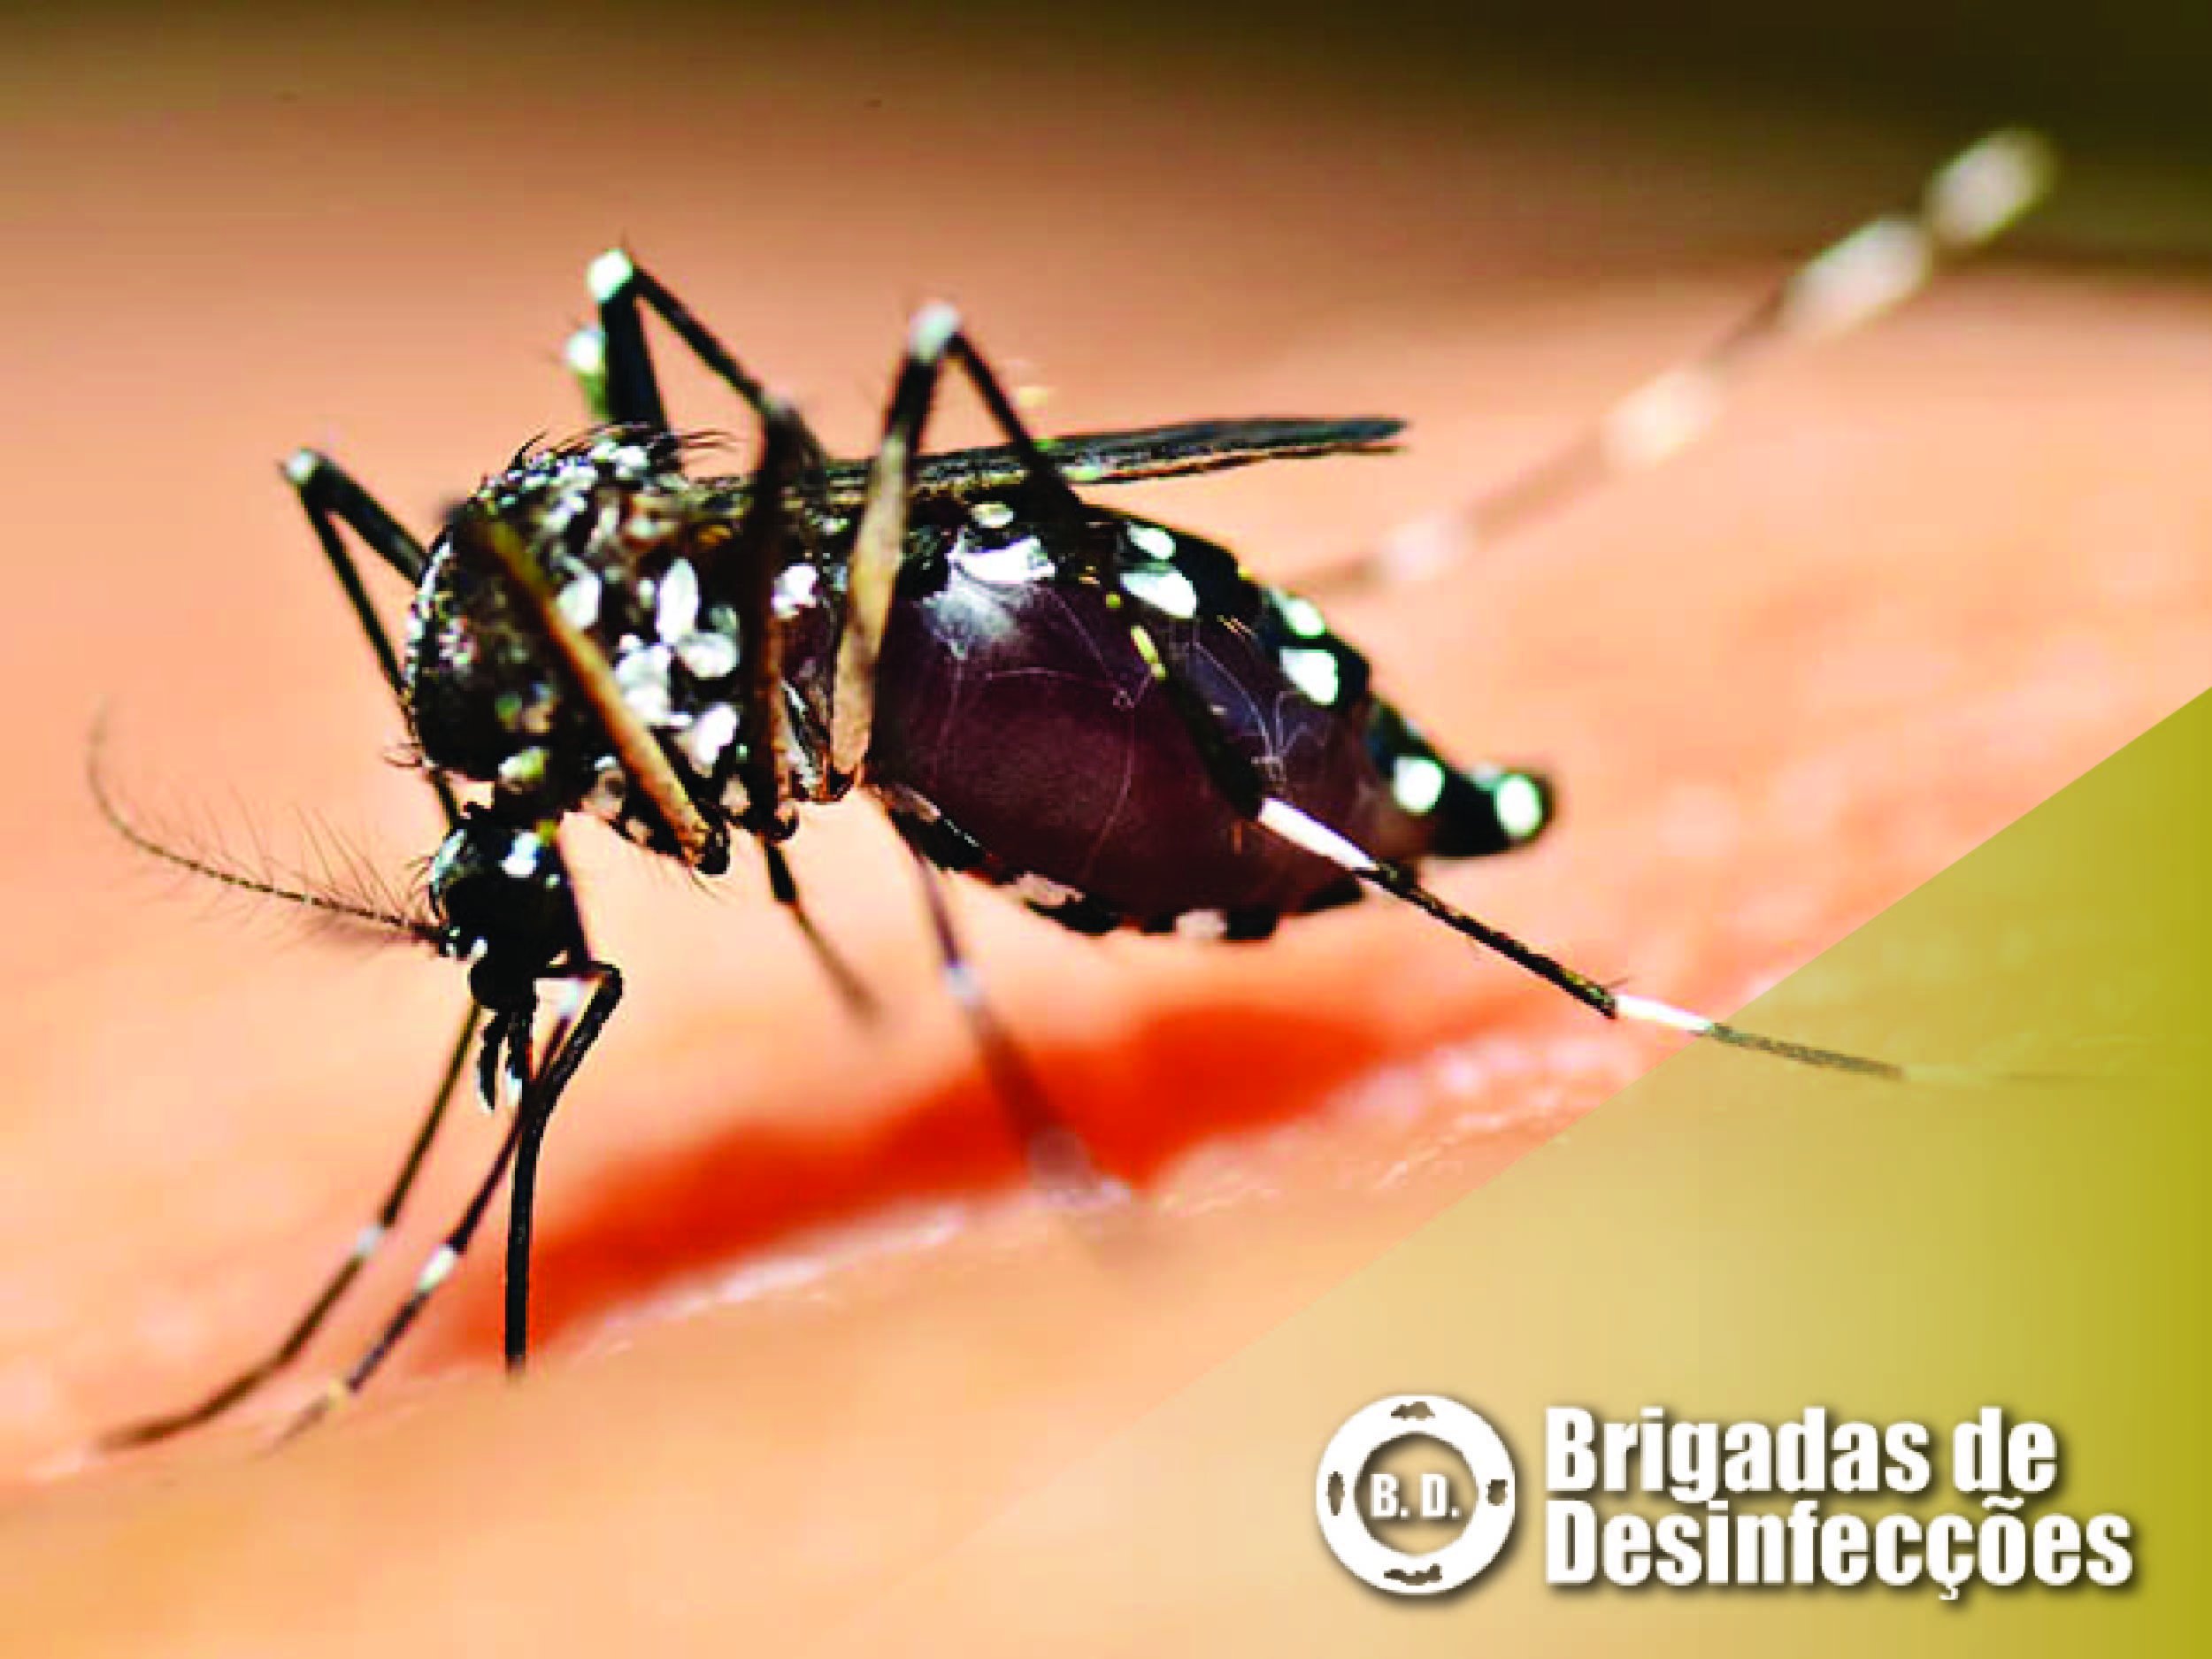 Mosquito Tigre Asiático transmite o vírus da Febre Dengue?